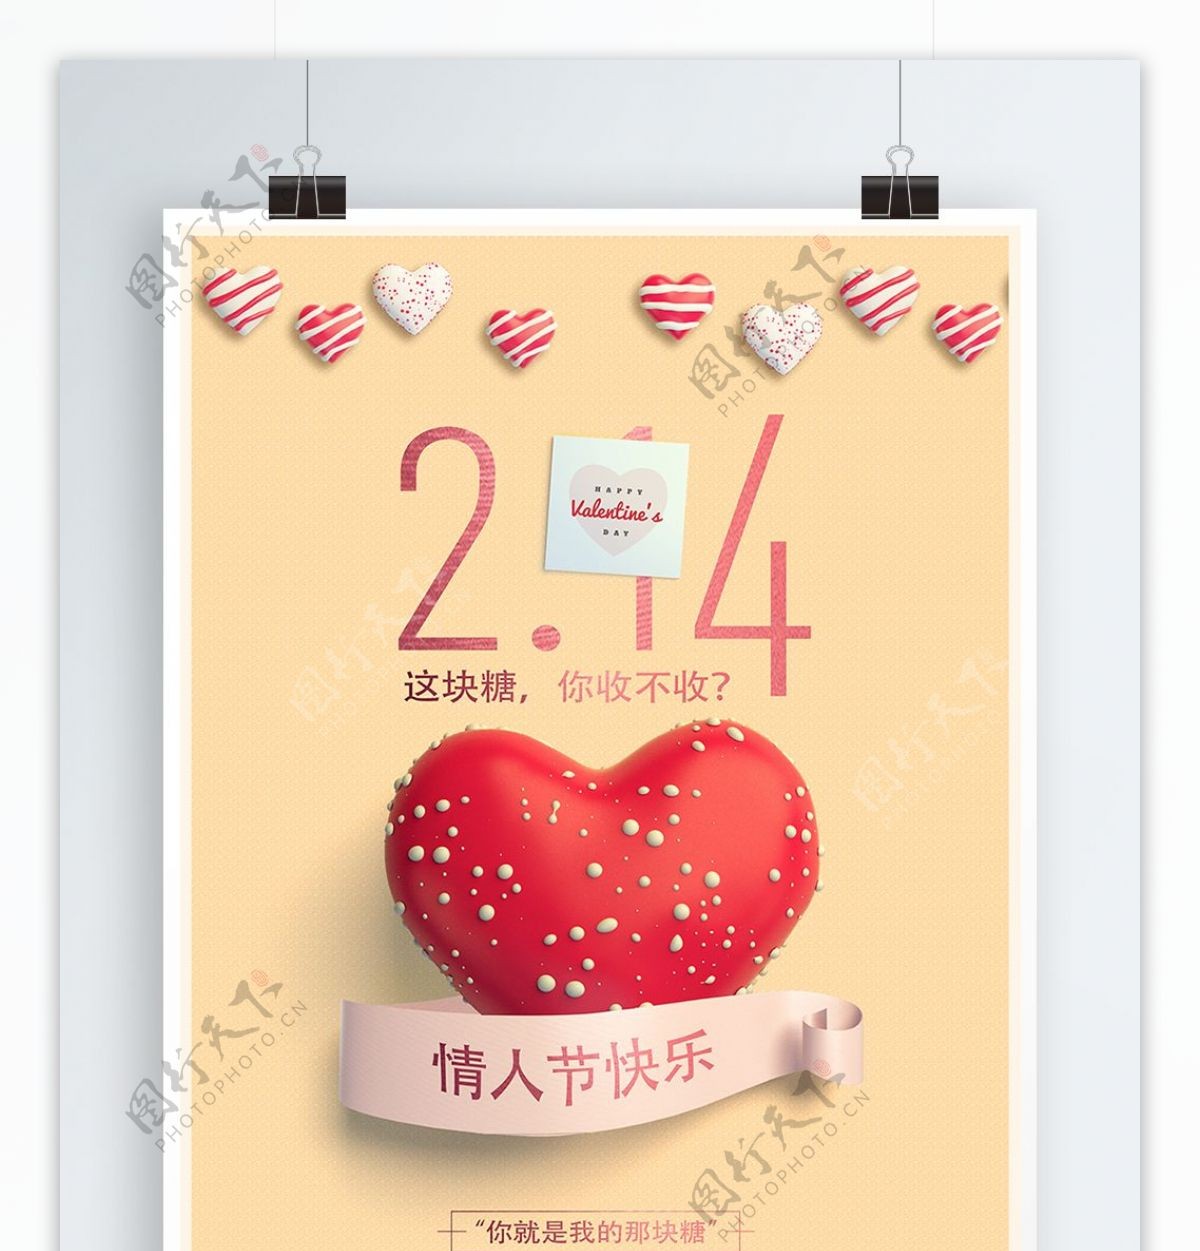 2018年2月14日简约爱心情人节节日海报创意糖果促销